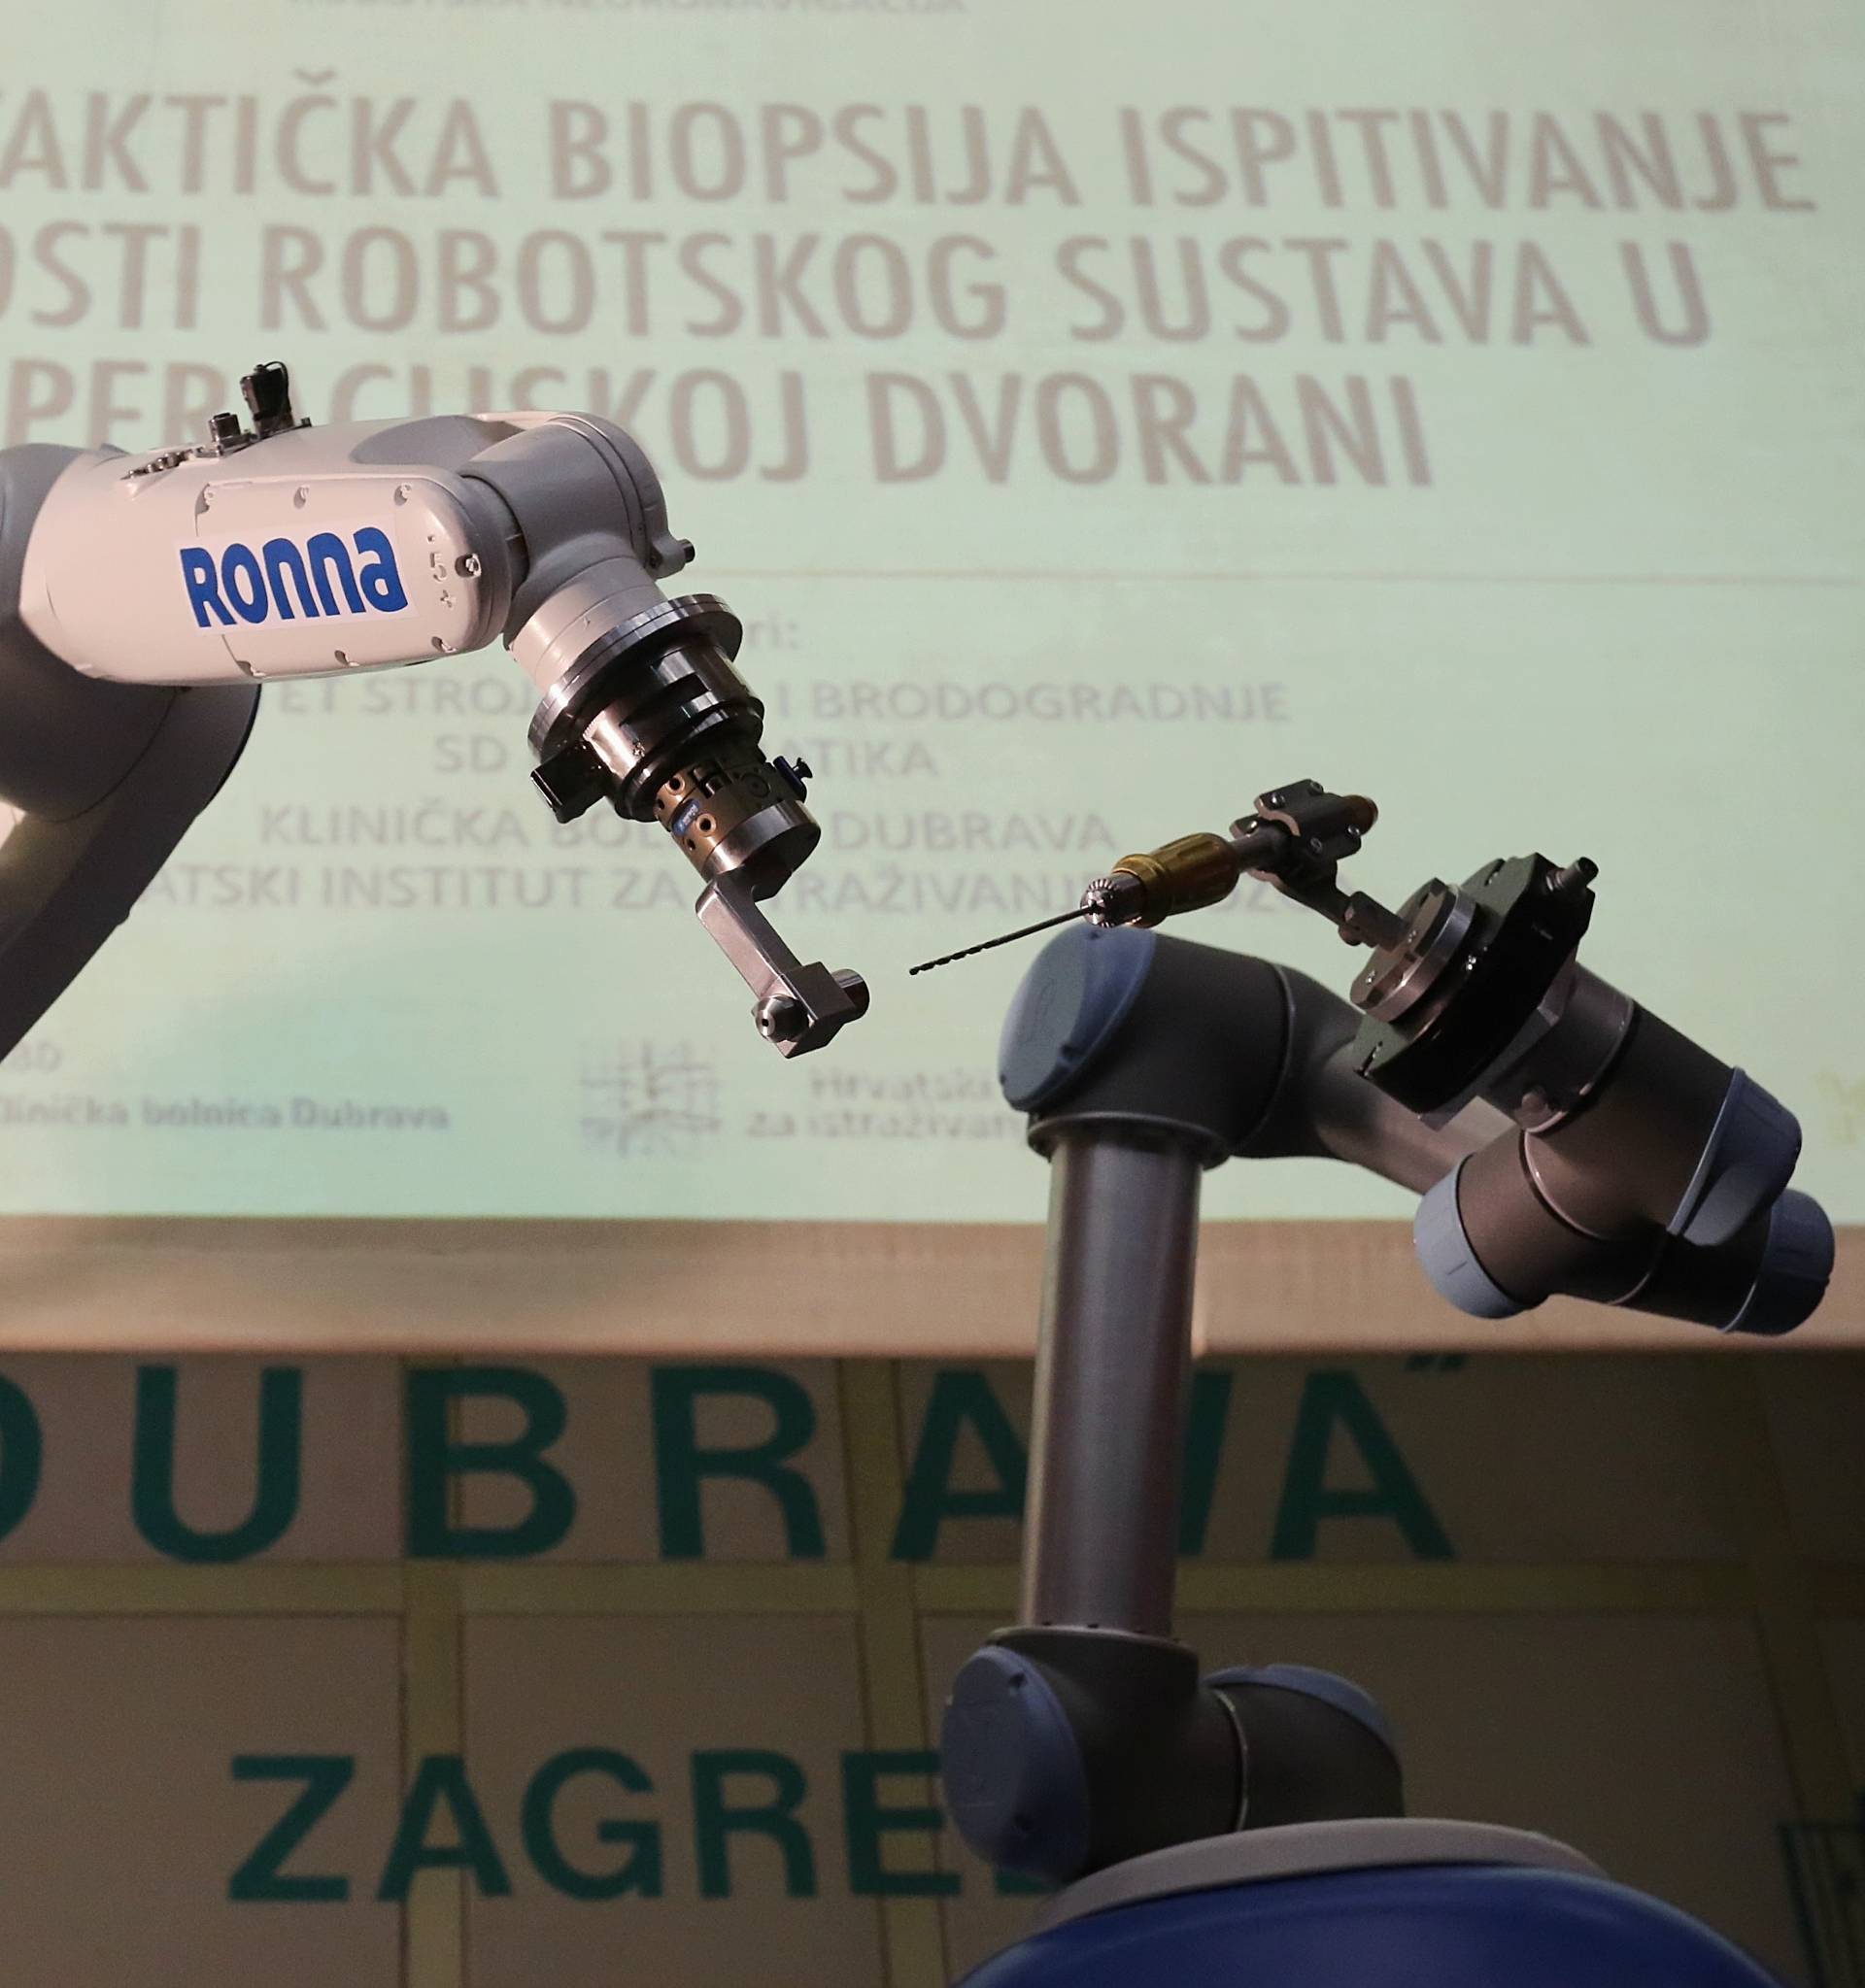 Hrvatski robot Ronna operirao pacijenta s tumorom na mozgu